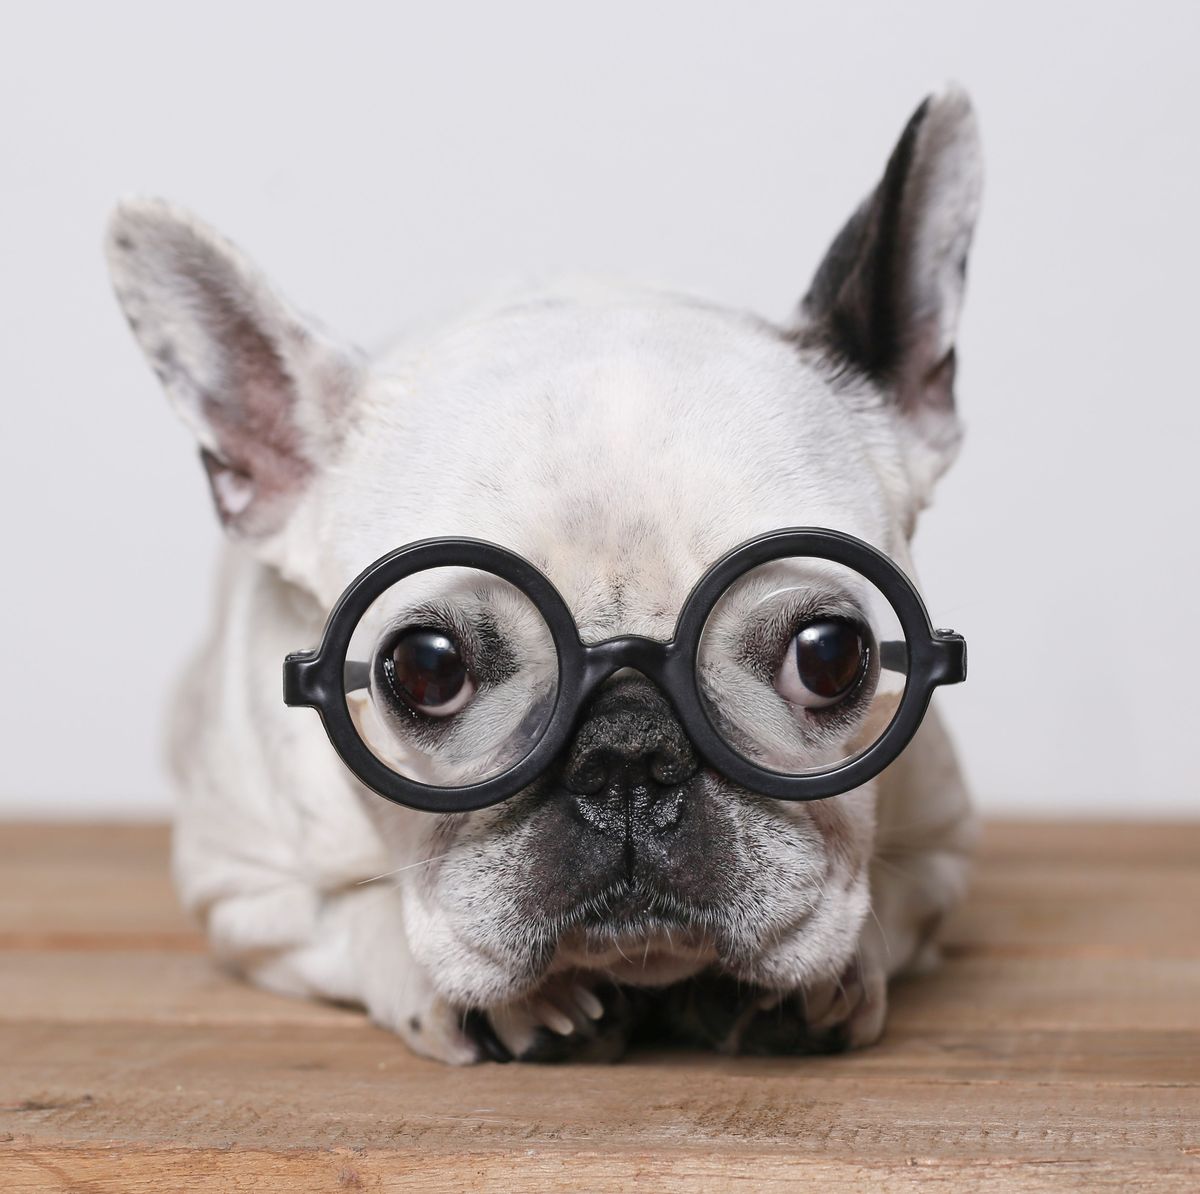 Top 10 Smartest Dog Breeds